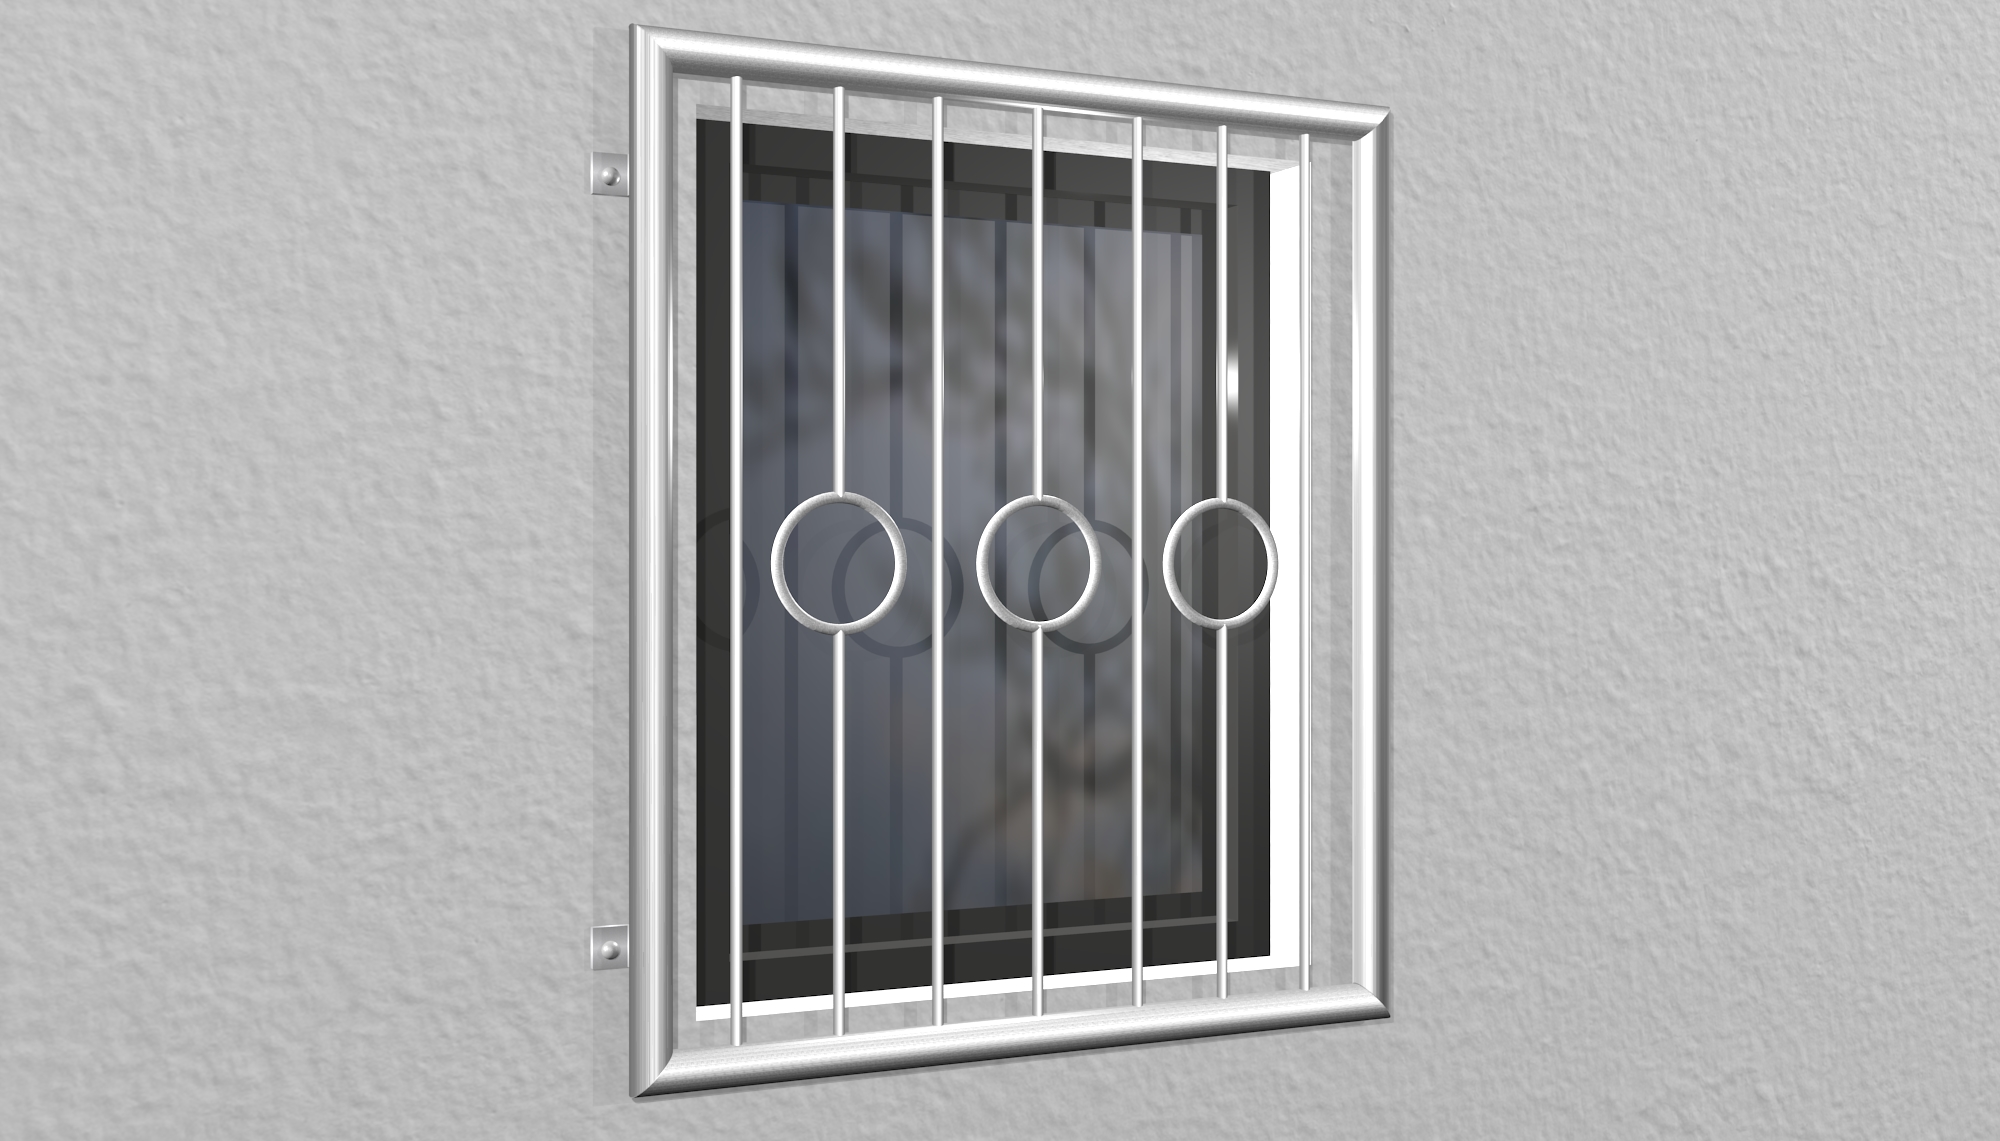 Grille de défense pour fenêtres en acier inoxydable cercle barre 